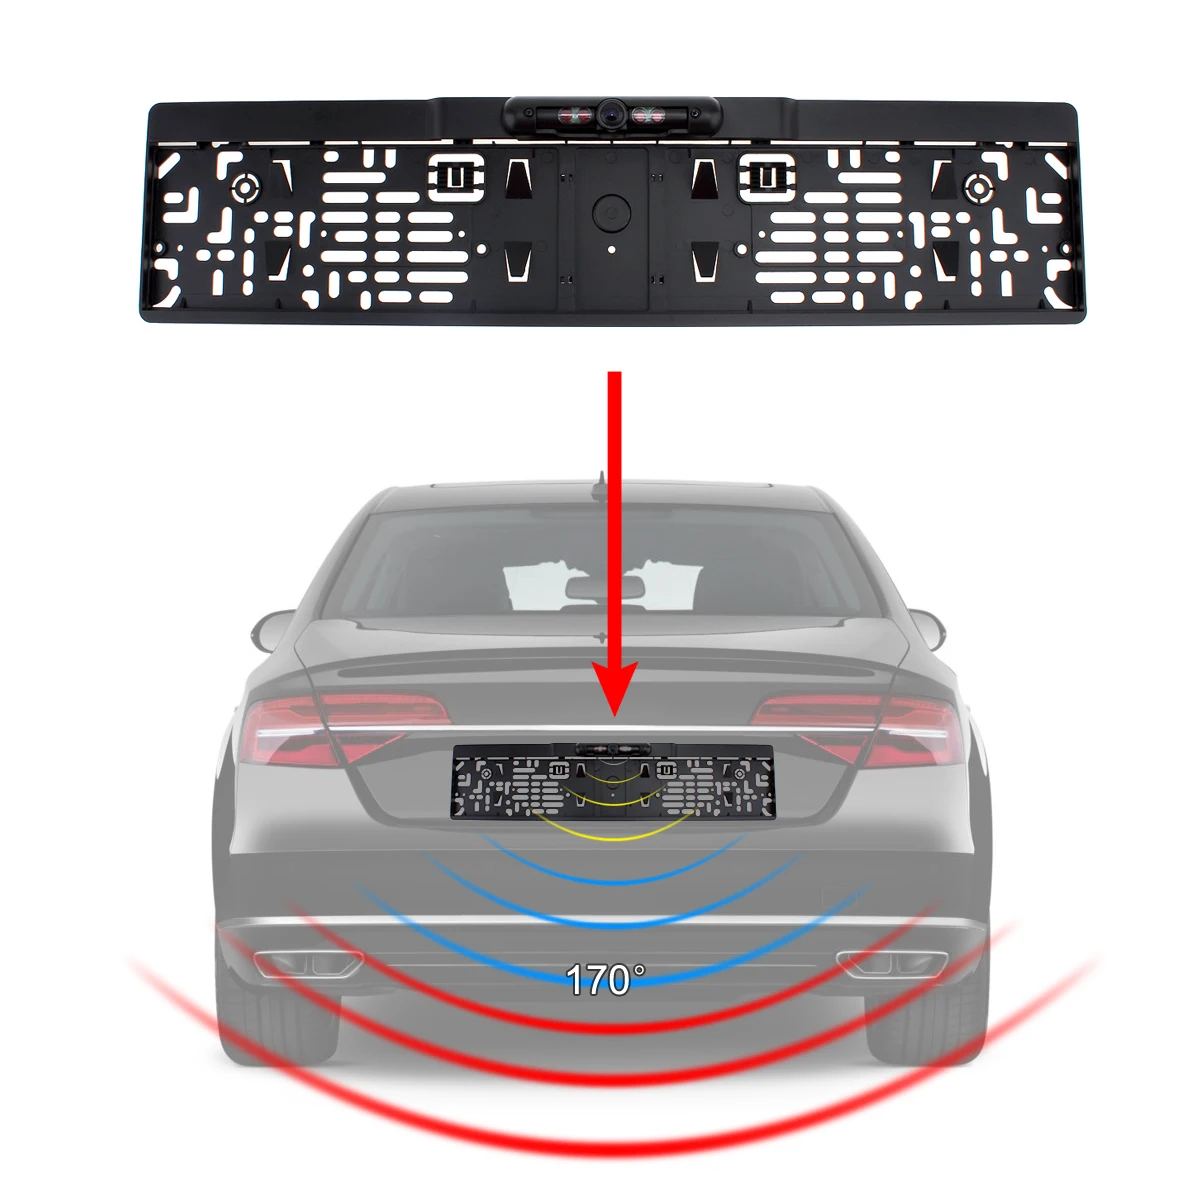 ИК ночного видения ЕС Автомобильная рамка номерного знака заднего вида задняя камера+ 2,4G беспроводной цветной видео передатчик и приемник